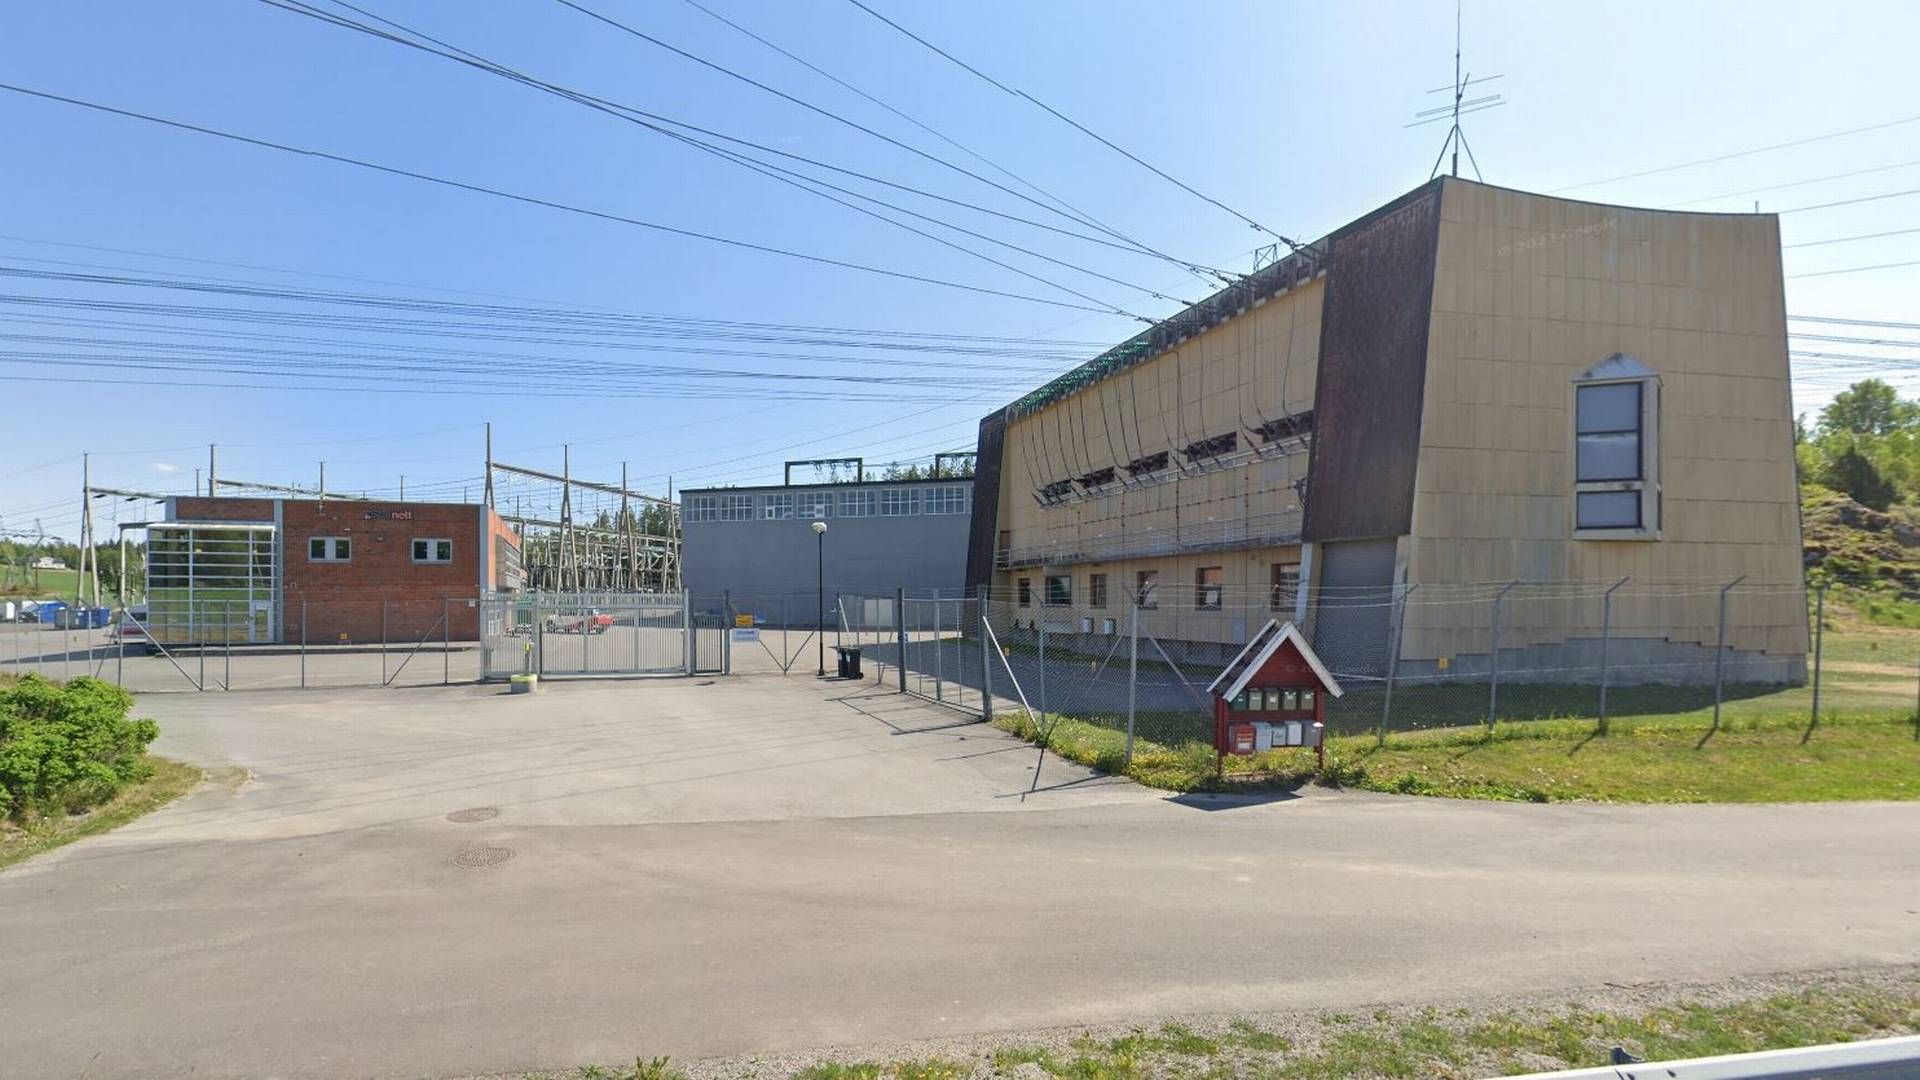 Tegneby transformatorstasjon i Vestby. | Foto: Skjermbilde fra Google Maps.